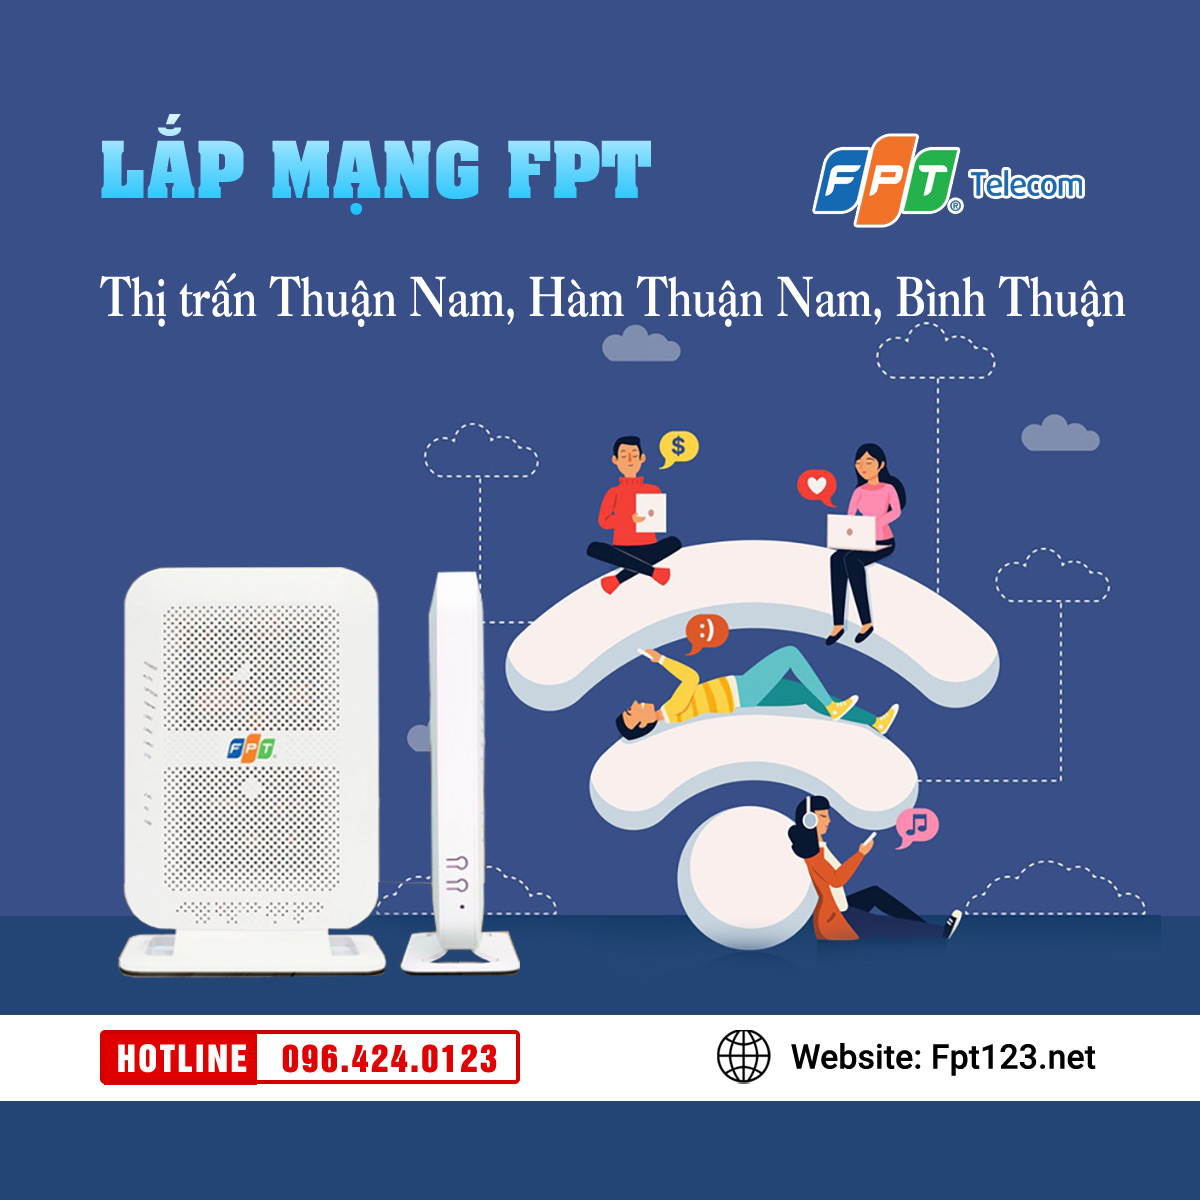 Lắp mạng FPT thị trấn Thuận Nam, Hàm Thuận Nam, Bình Thuận